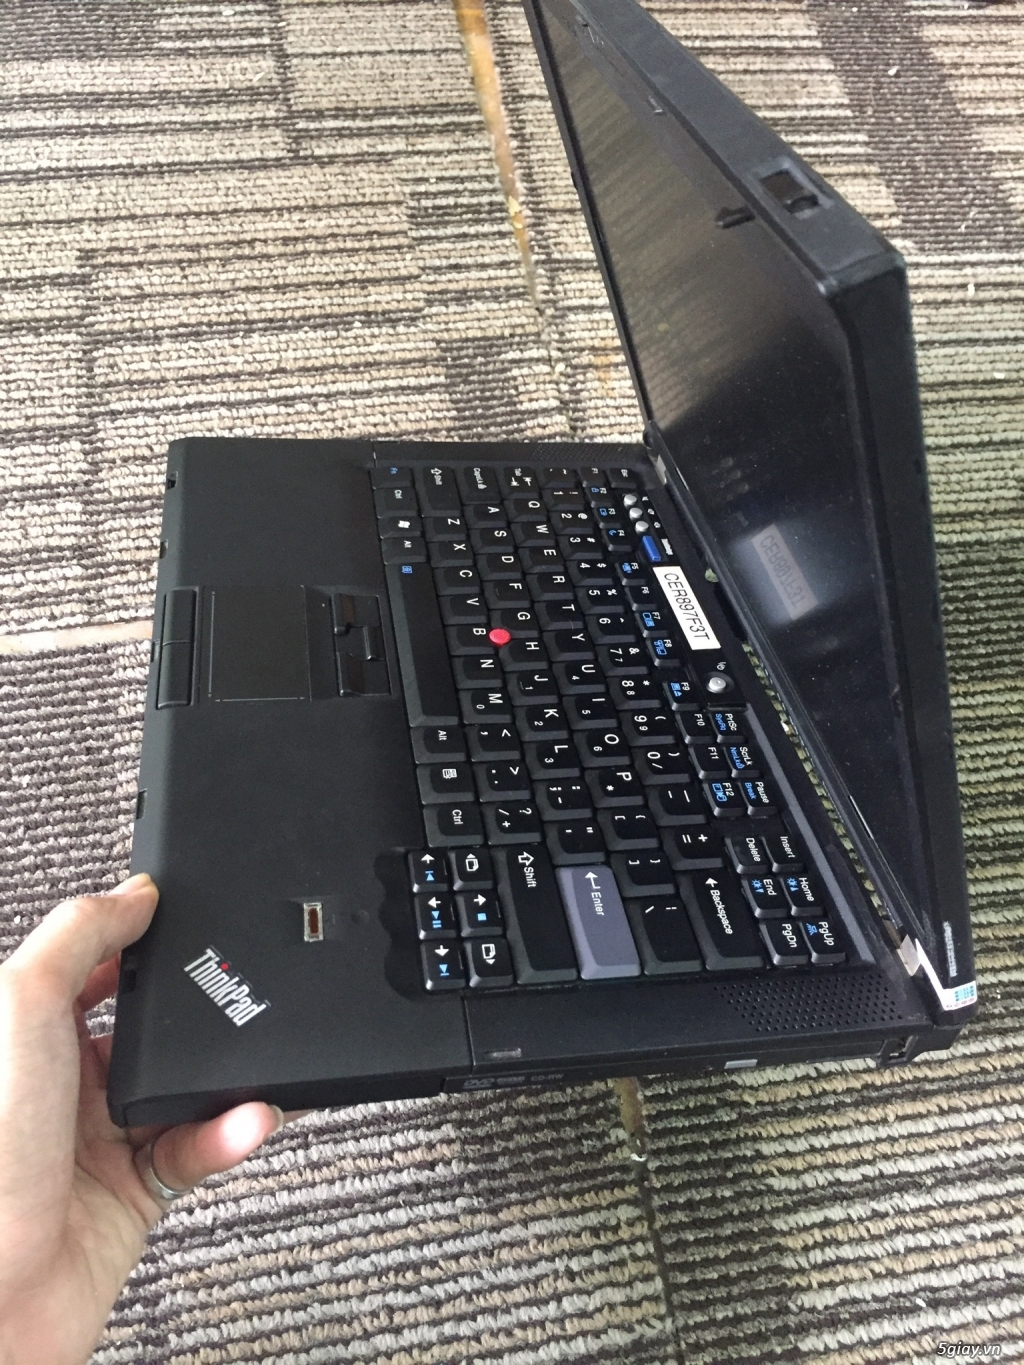 Dư con laptop xách tay Lenovo Thinkpad T400 like new giá rẻ bất ngờ!!! - 3